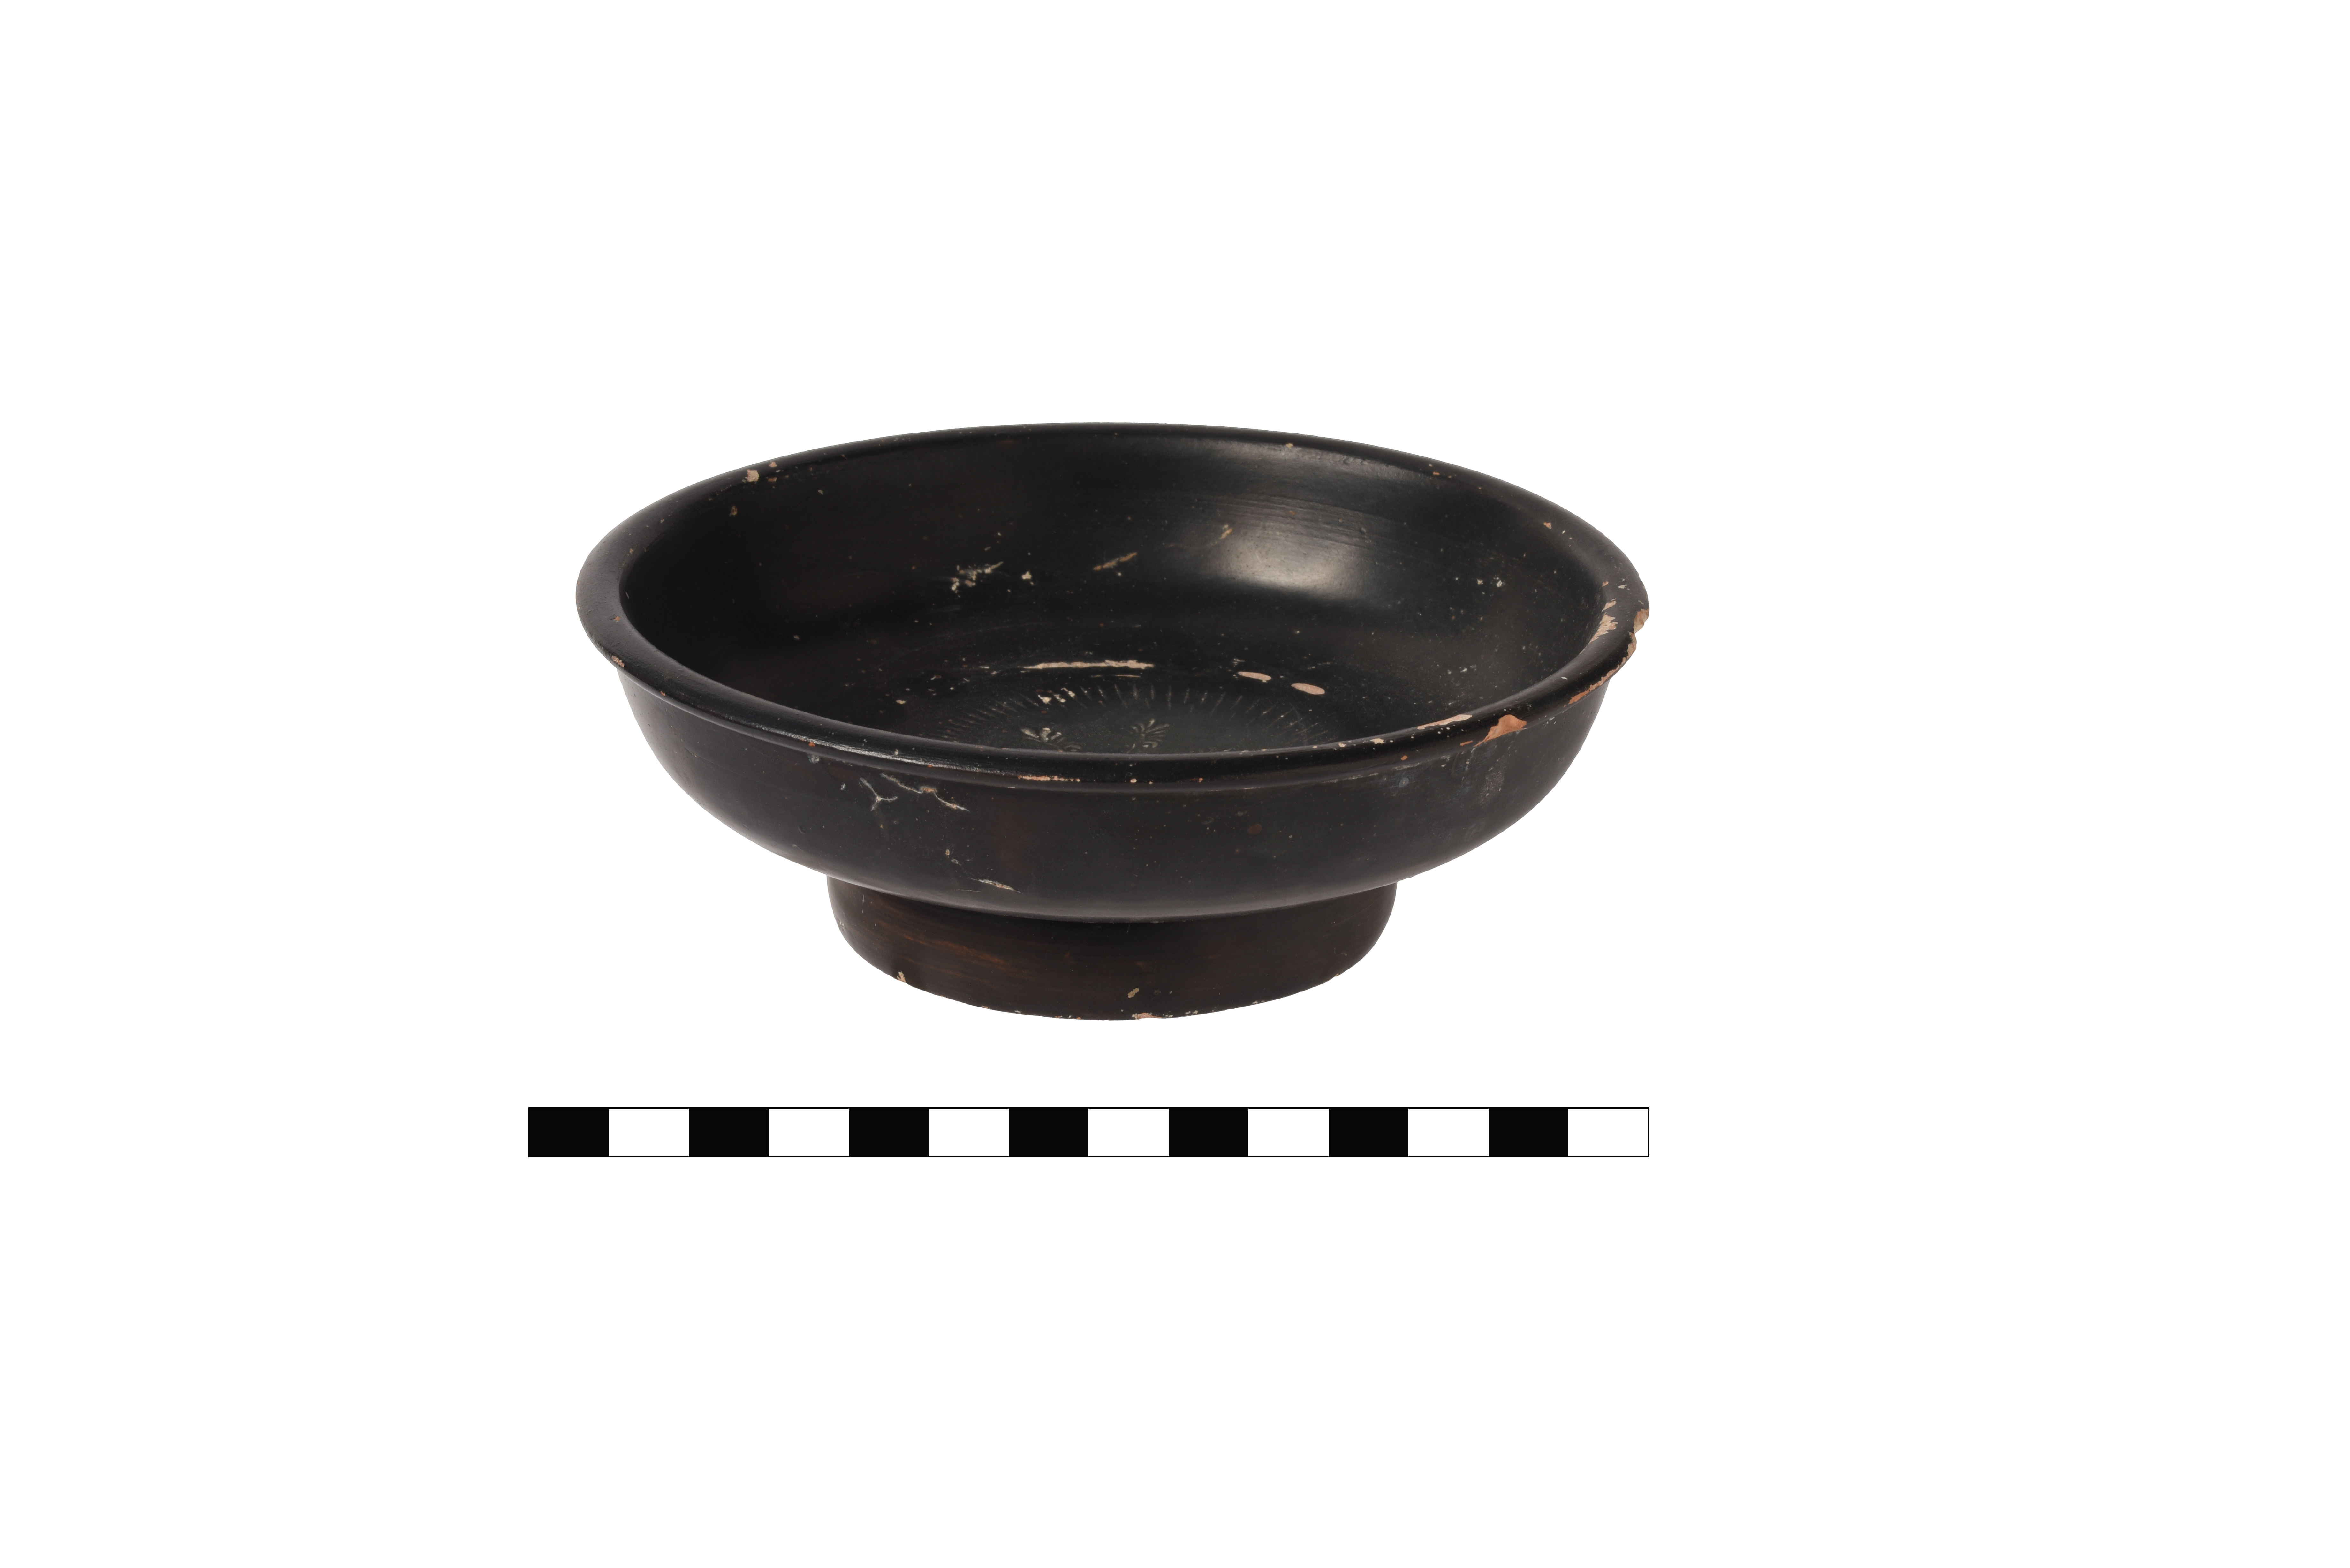 coppa/ a vernice nera, a decorazione stampigliata, Morel 2732a 1 - ambito punico-romano (III sec. a.C)